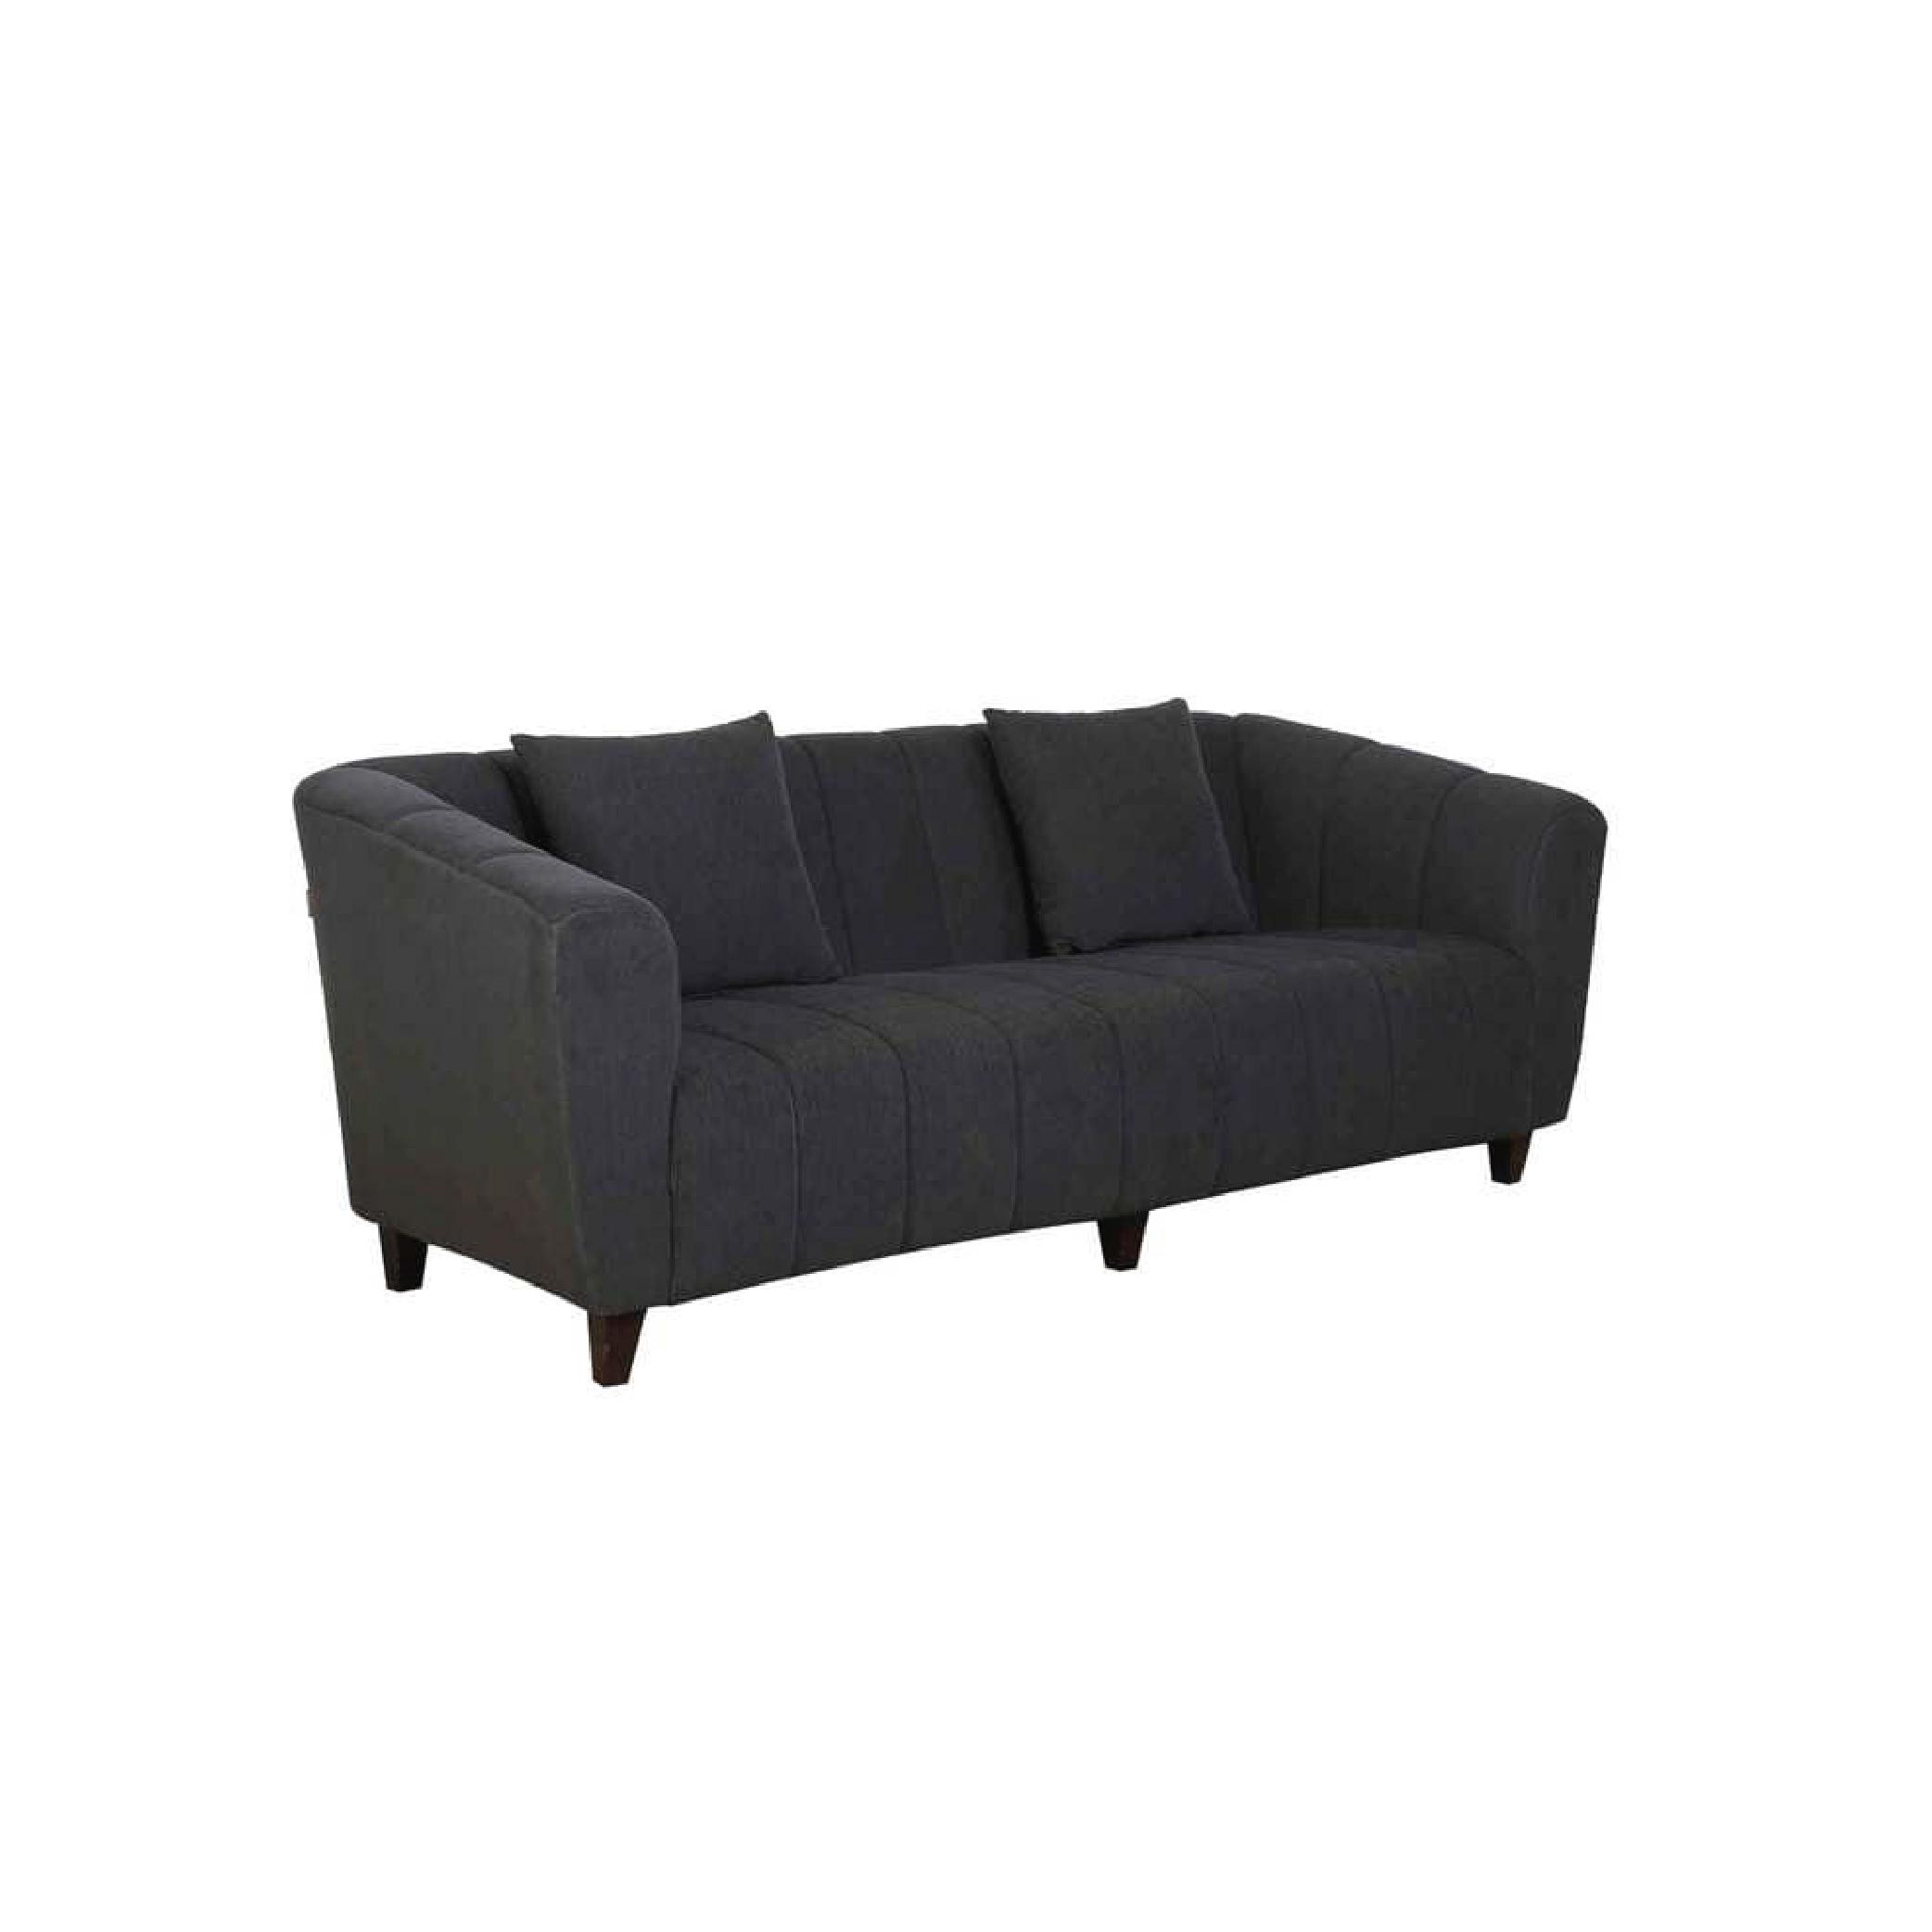 Bobbio Three Seater Sofa in Grey Colour